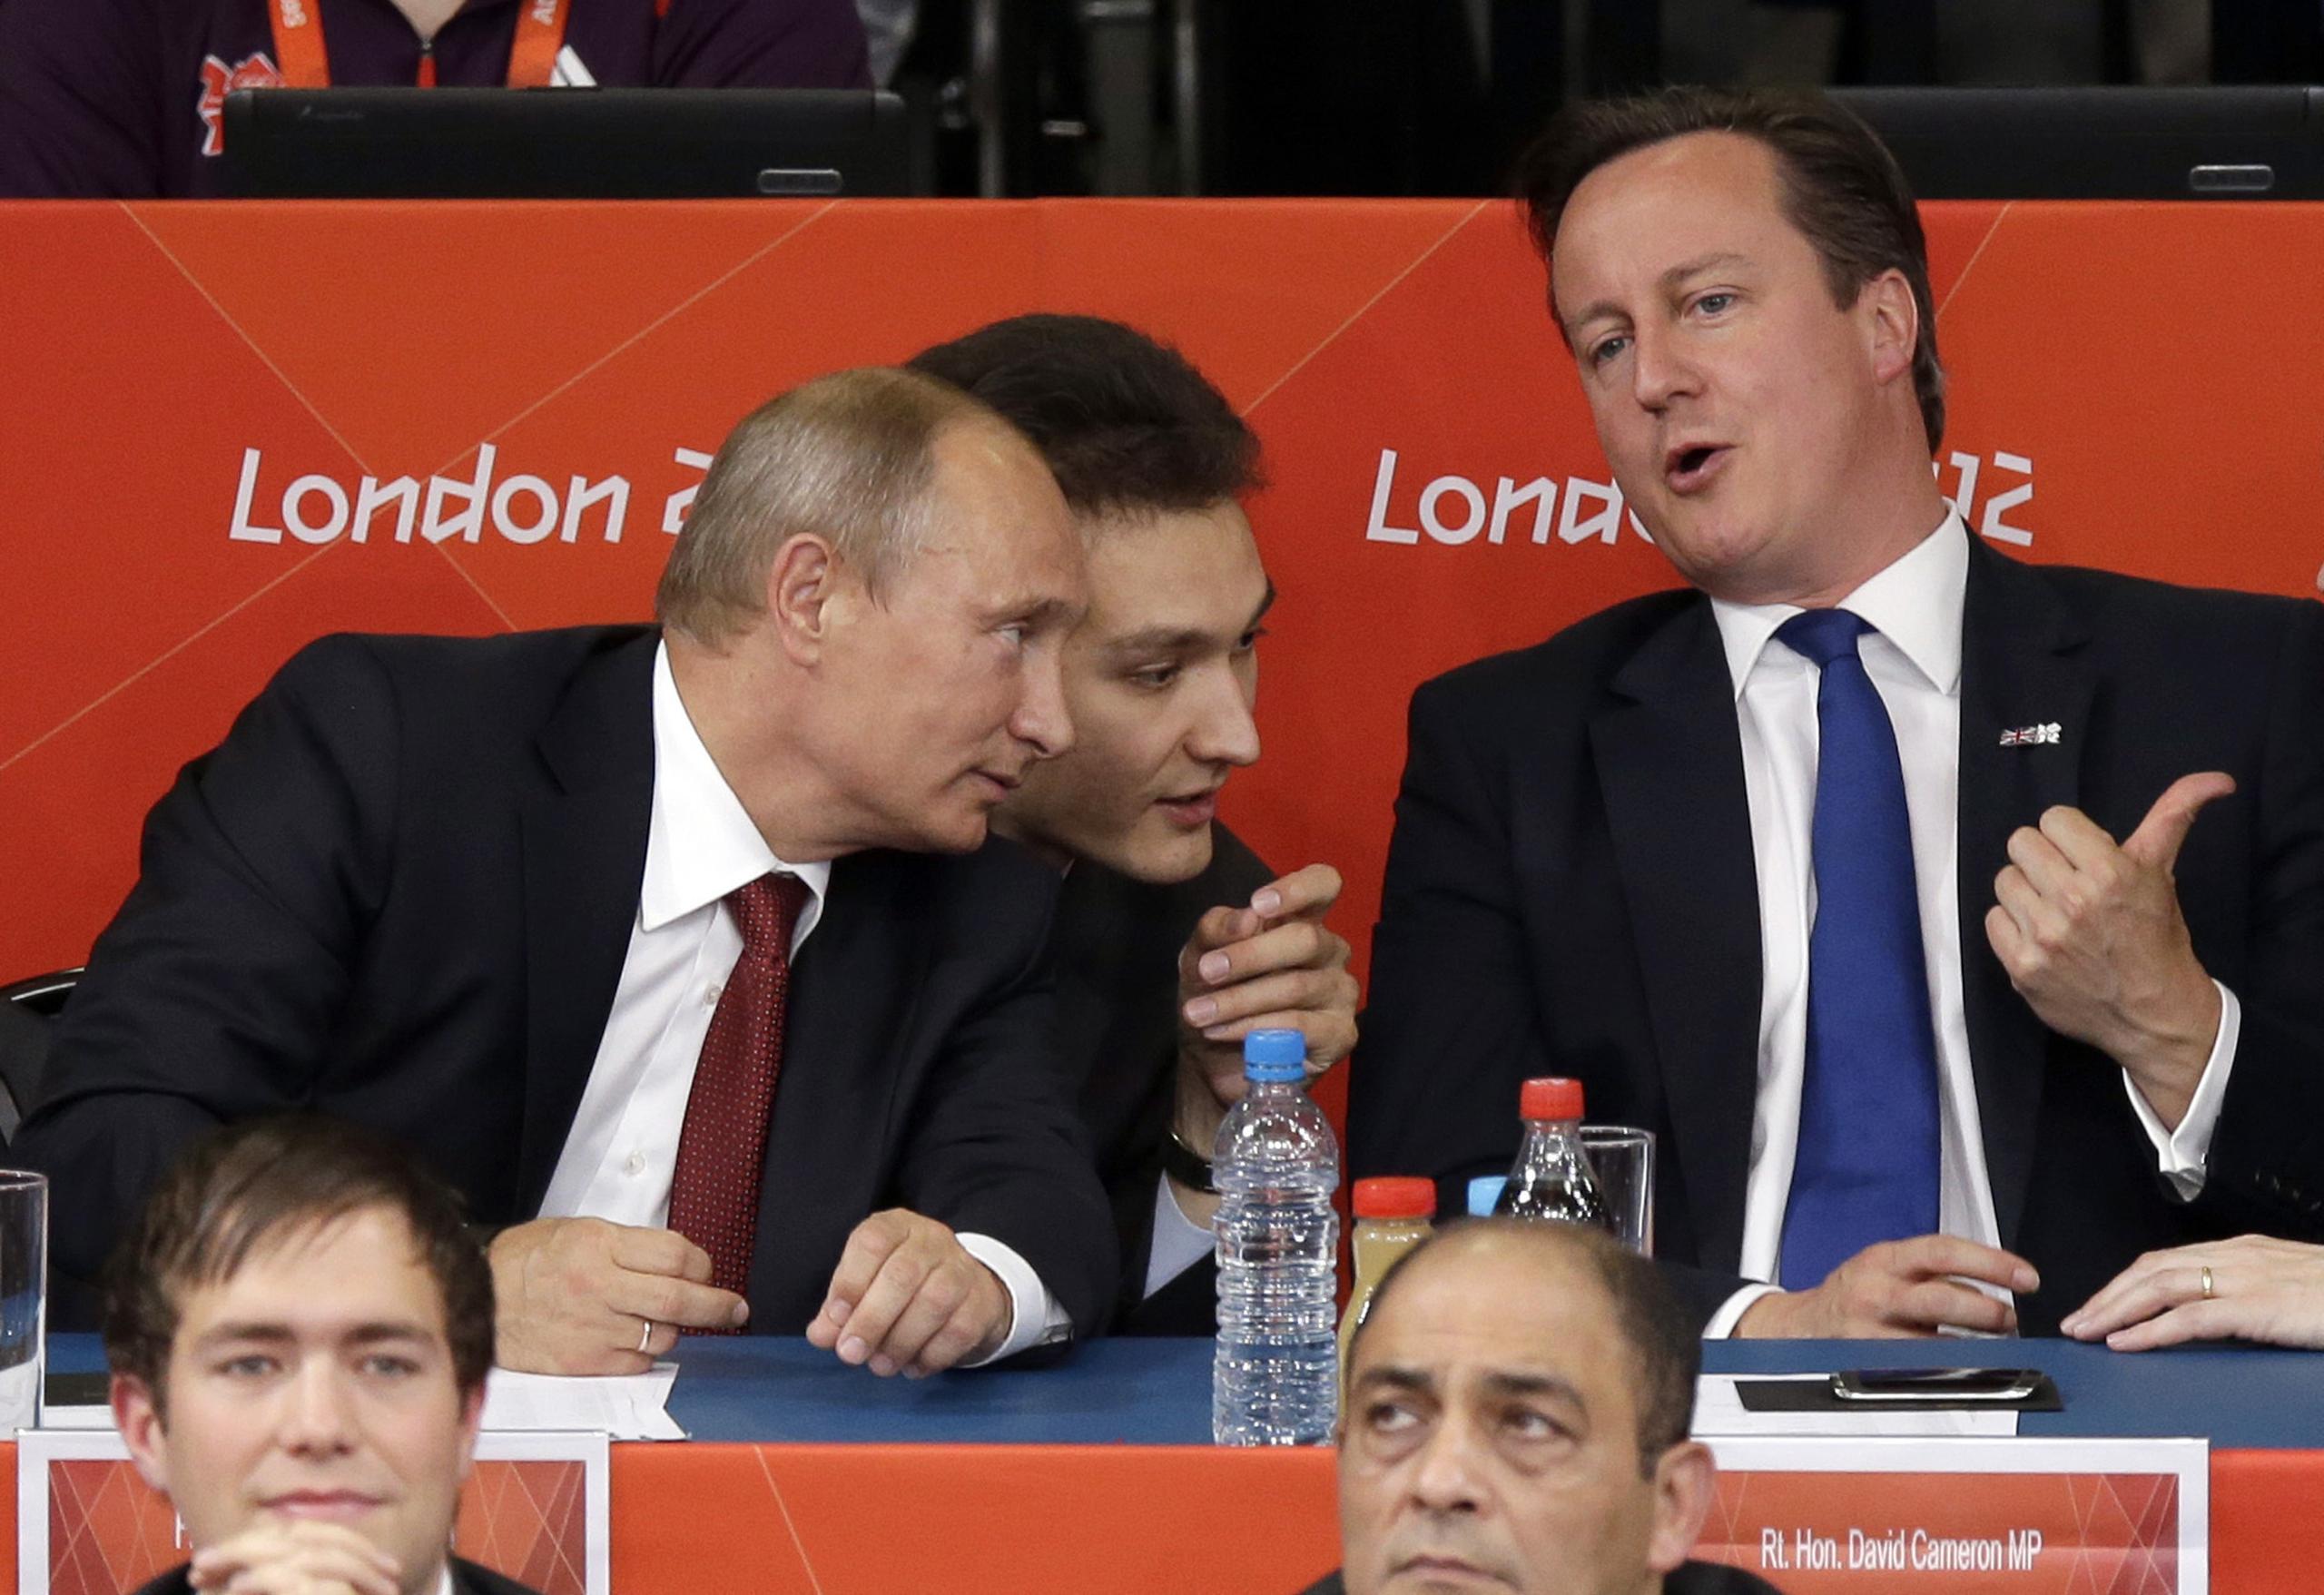 El presidente ruso Vladmir Putin (izquierda) y el primer ministro británico David Cameron observan una competencia de judo en los Juegos Olímpicos de Londres, el 2 de agosto de 2012.